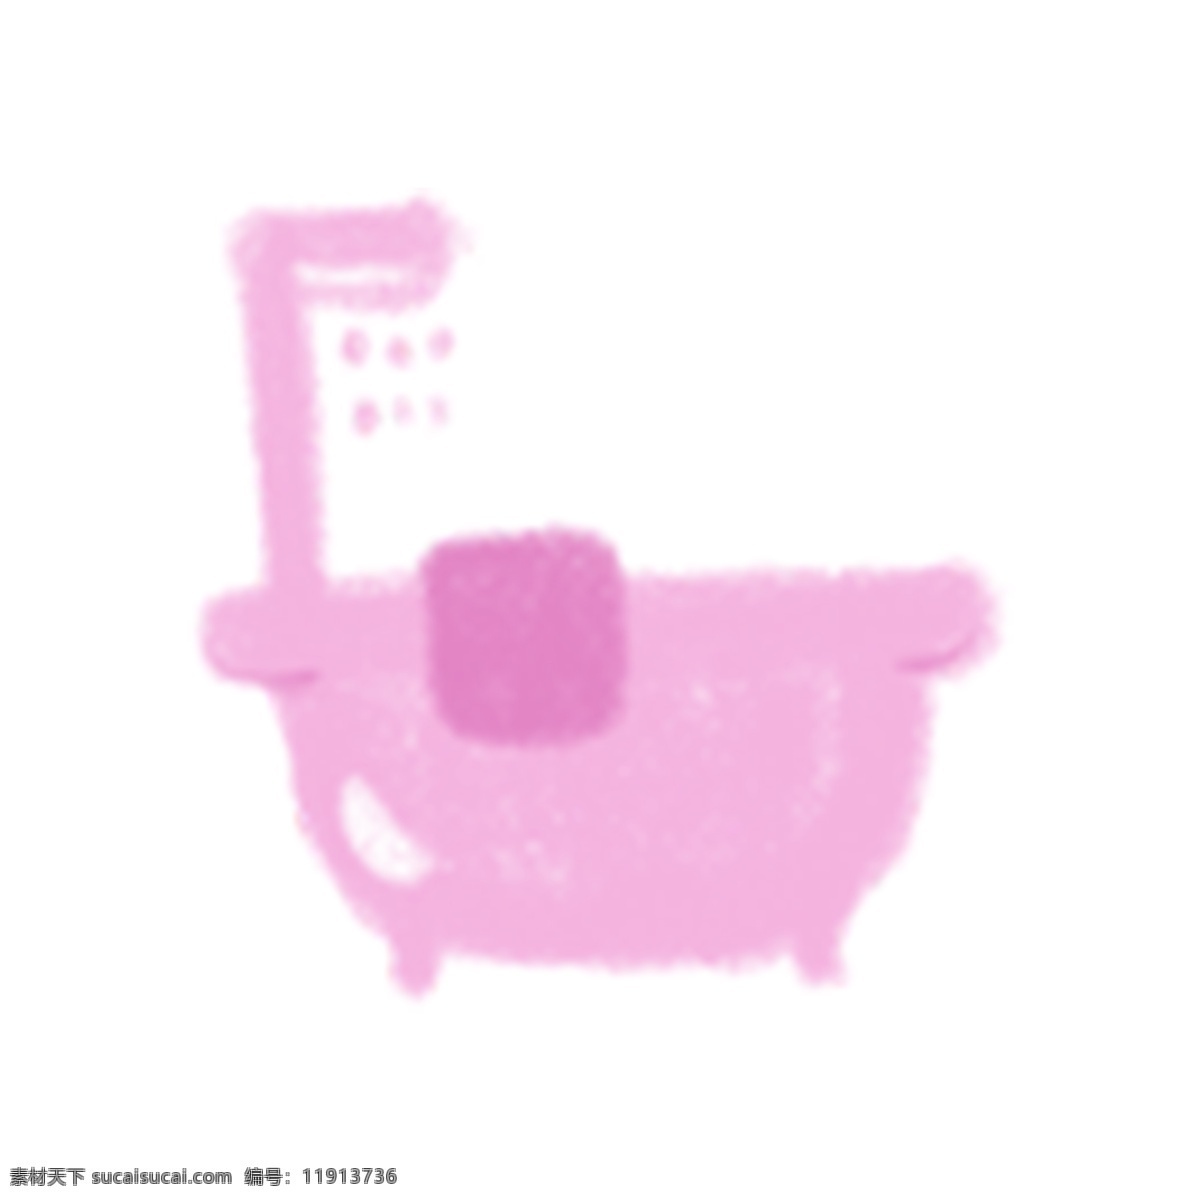 粉色 浴缸 插画 ui 图标 粉色浴缸 洗澡 泡澡 插画浴缸 卡通浴缸 ui图标 沐浴 厨卫